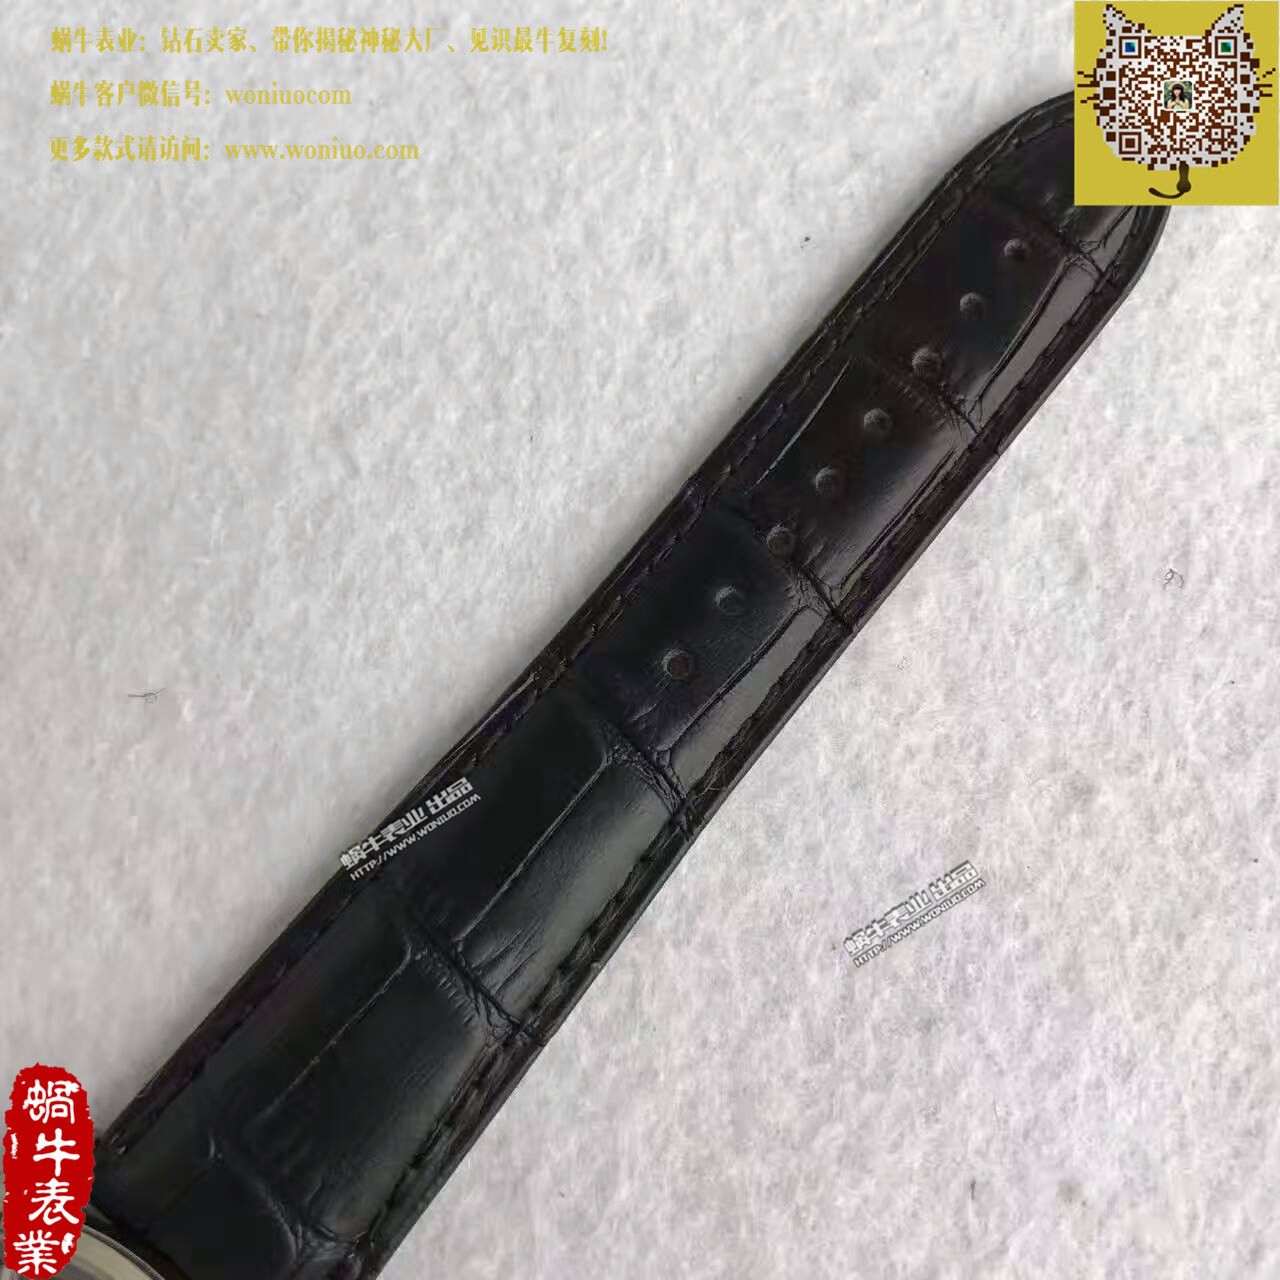 【台湾厂一比一超A高仿手表】美度指挥官系列M021.431.16.031.00腕表 